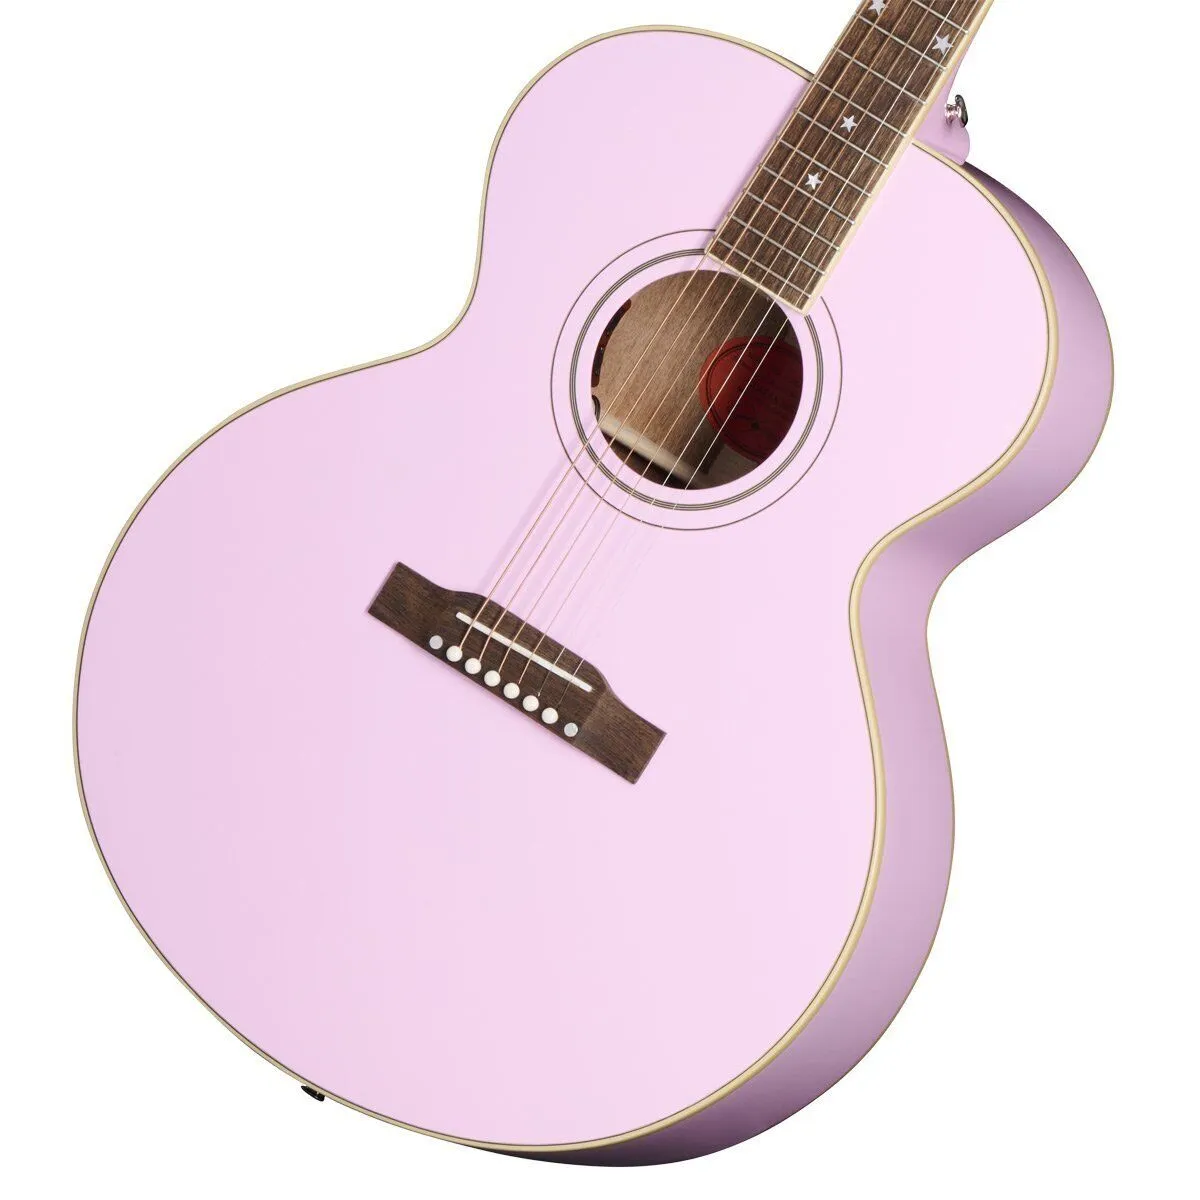 Inspirado no violão J180 LS Pink Guitar